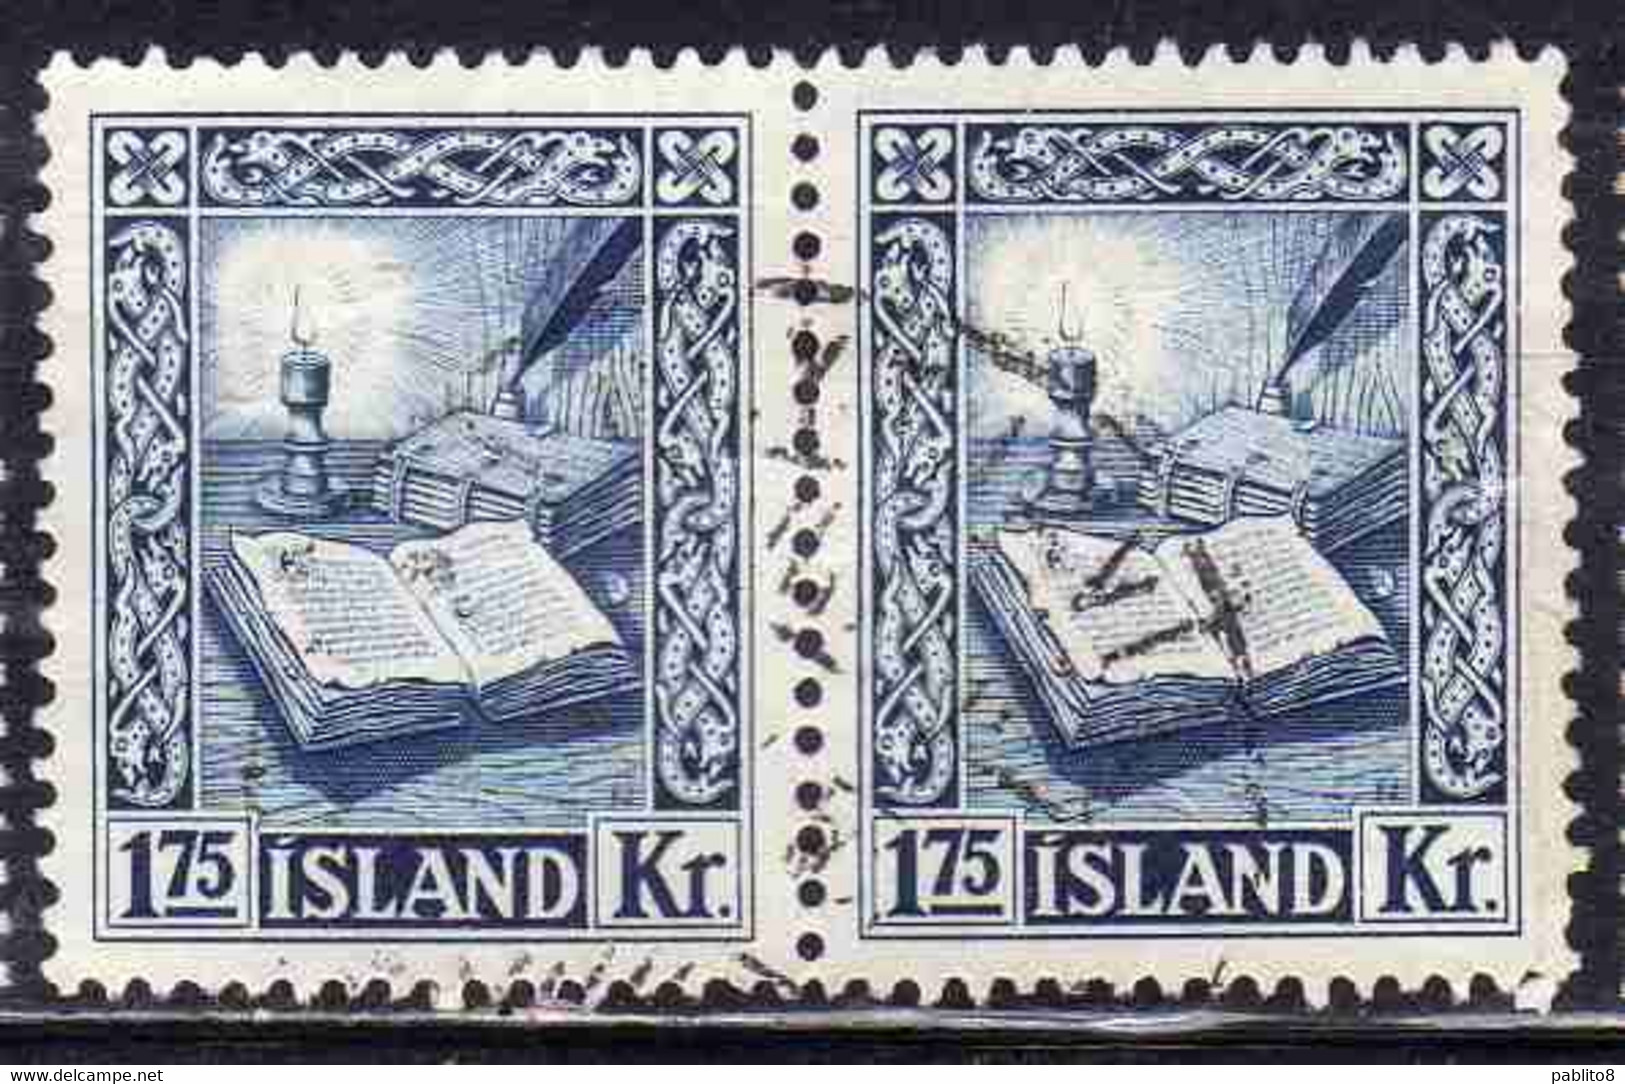 ISLANDA ICELAND ISLANDE 1953 REJKJABOK 1.75k USED USATO OBLITERE' - Usados